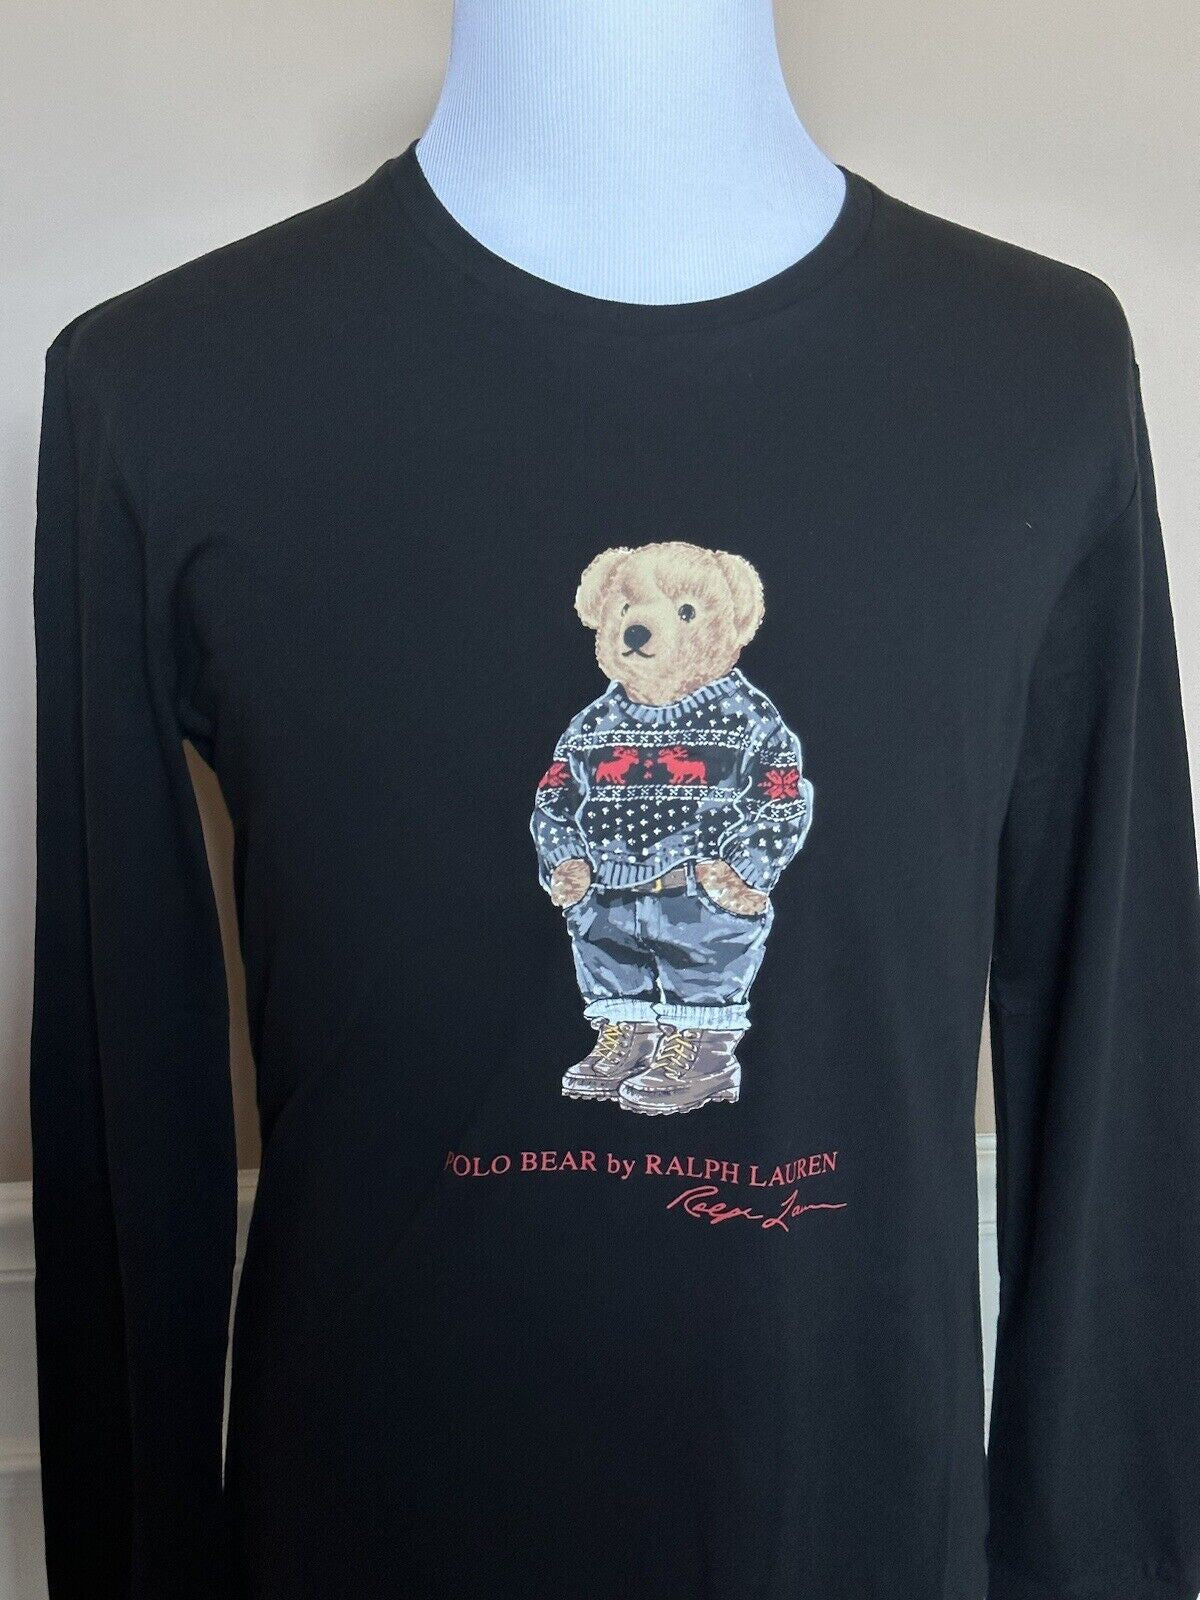 Neu mit Etikett: 79,50 $ Polo Ralph Lauren Langarm-T-Shirt mit Bärenmotiv, Schwarz, Größe M 